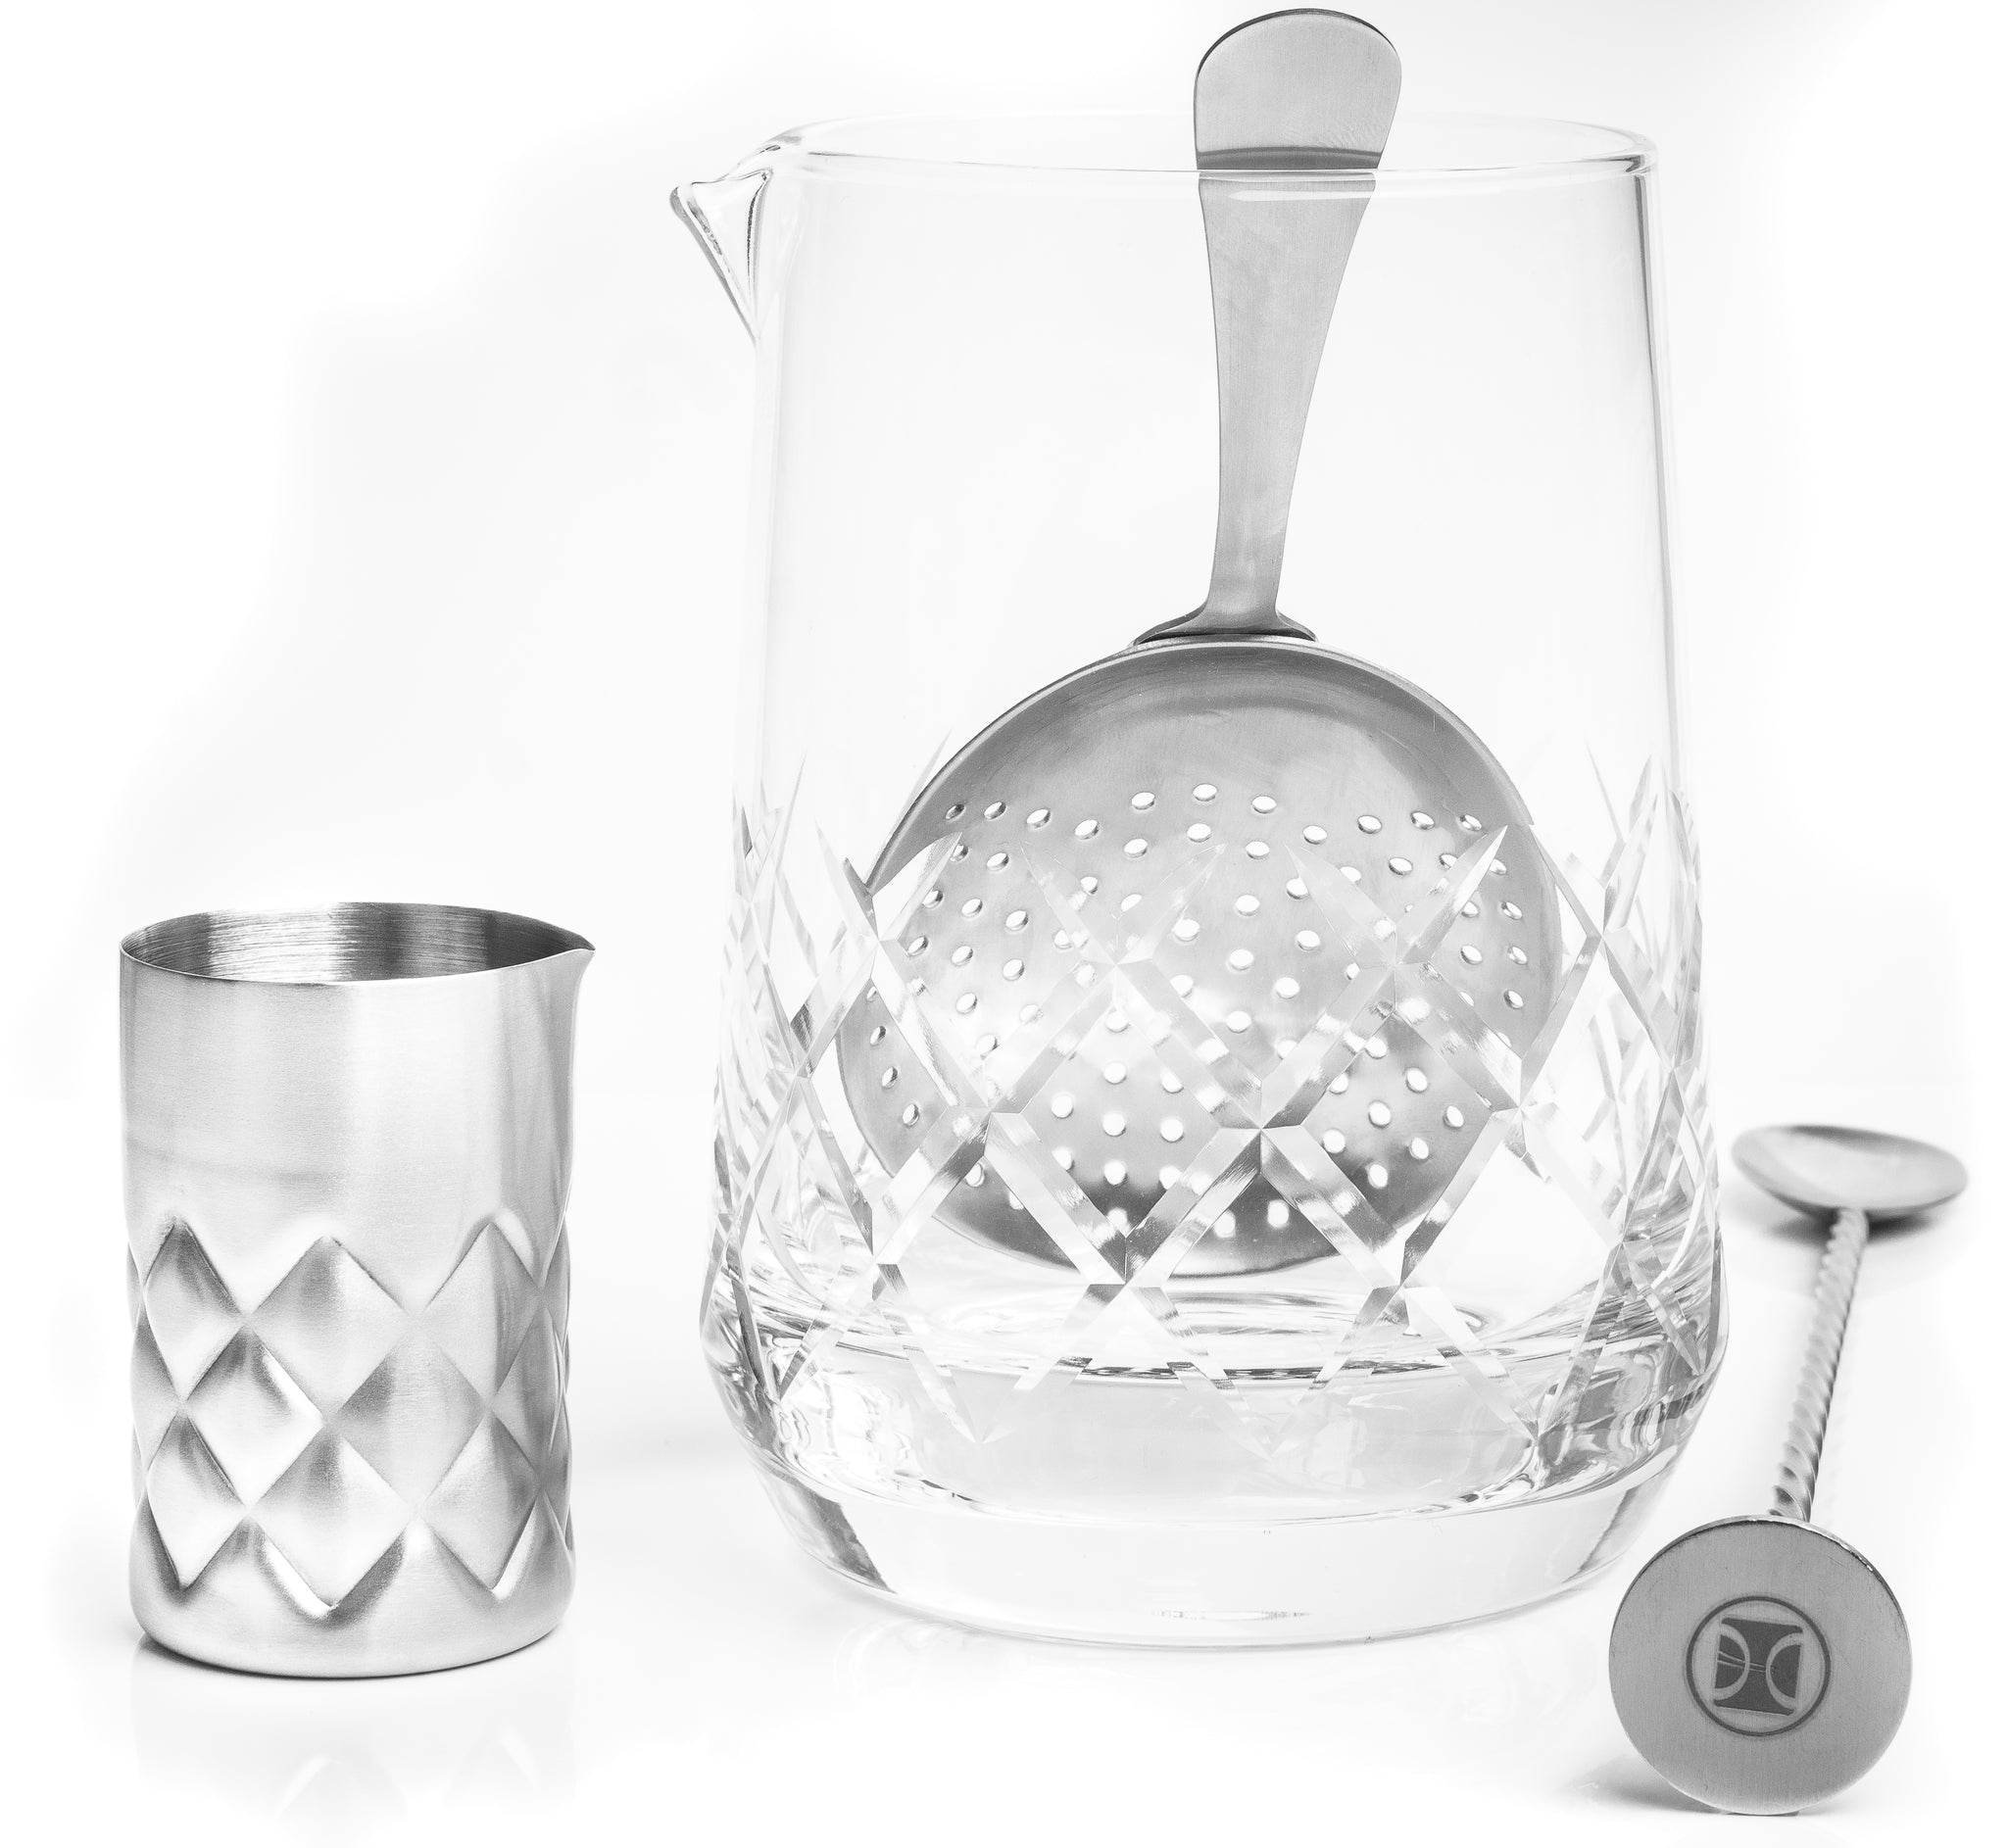 Cocktail Mixing Kit (Mixing Glass, bar spoon & jigger) – BAR